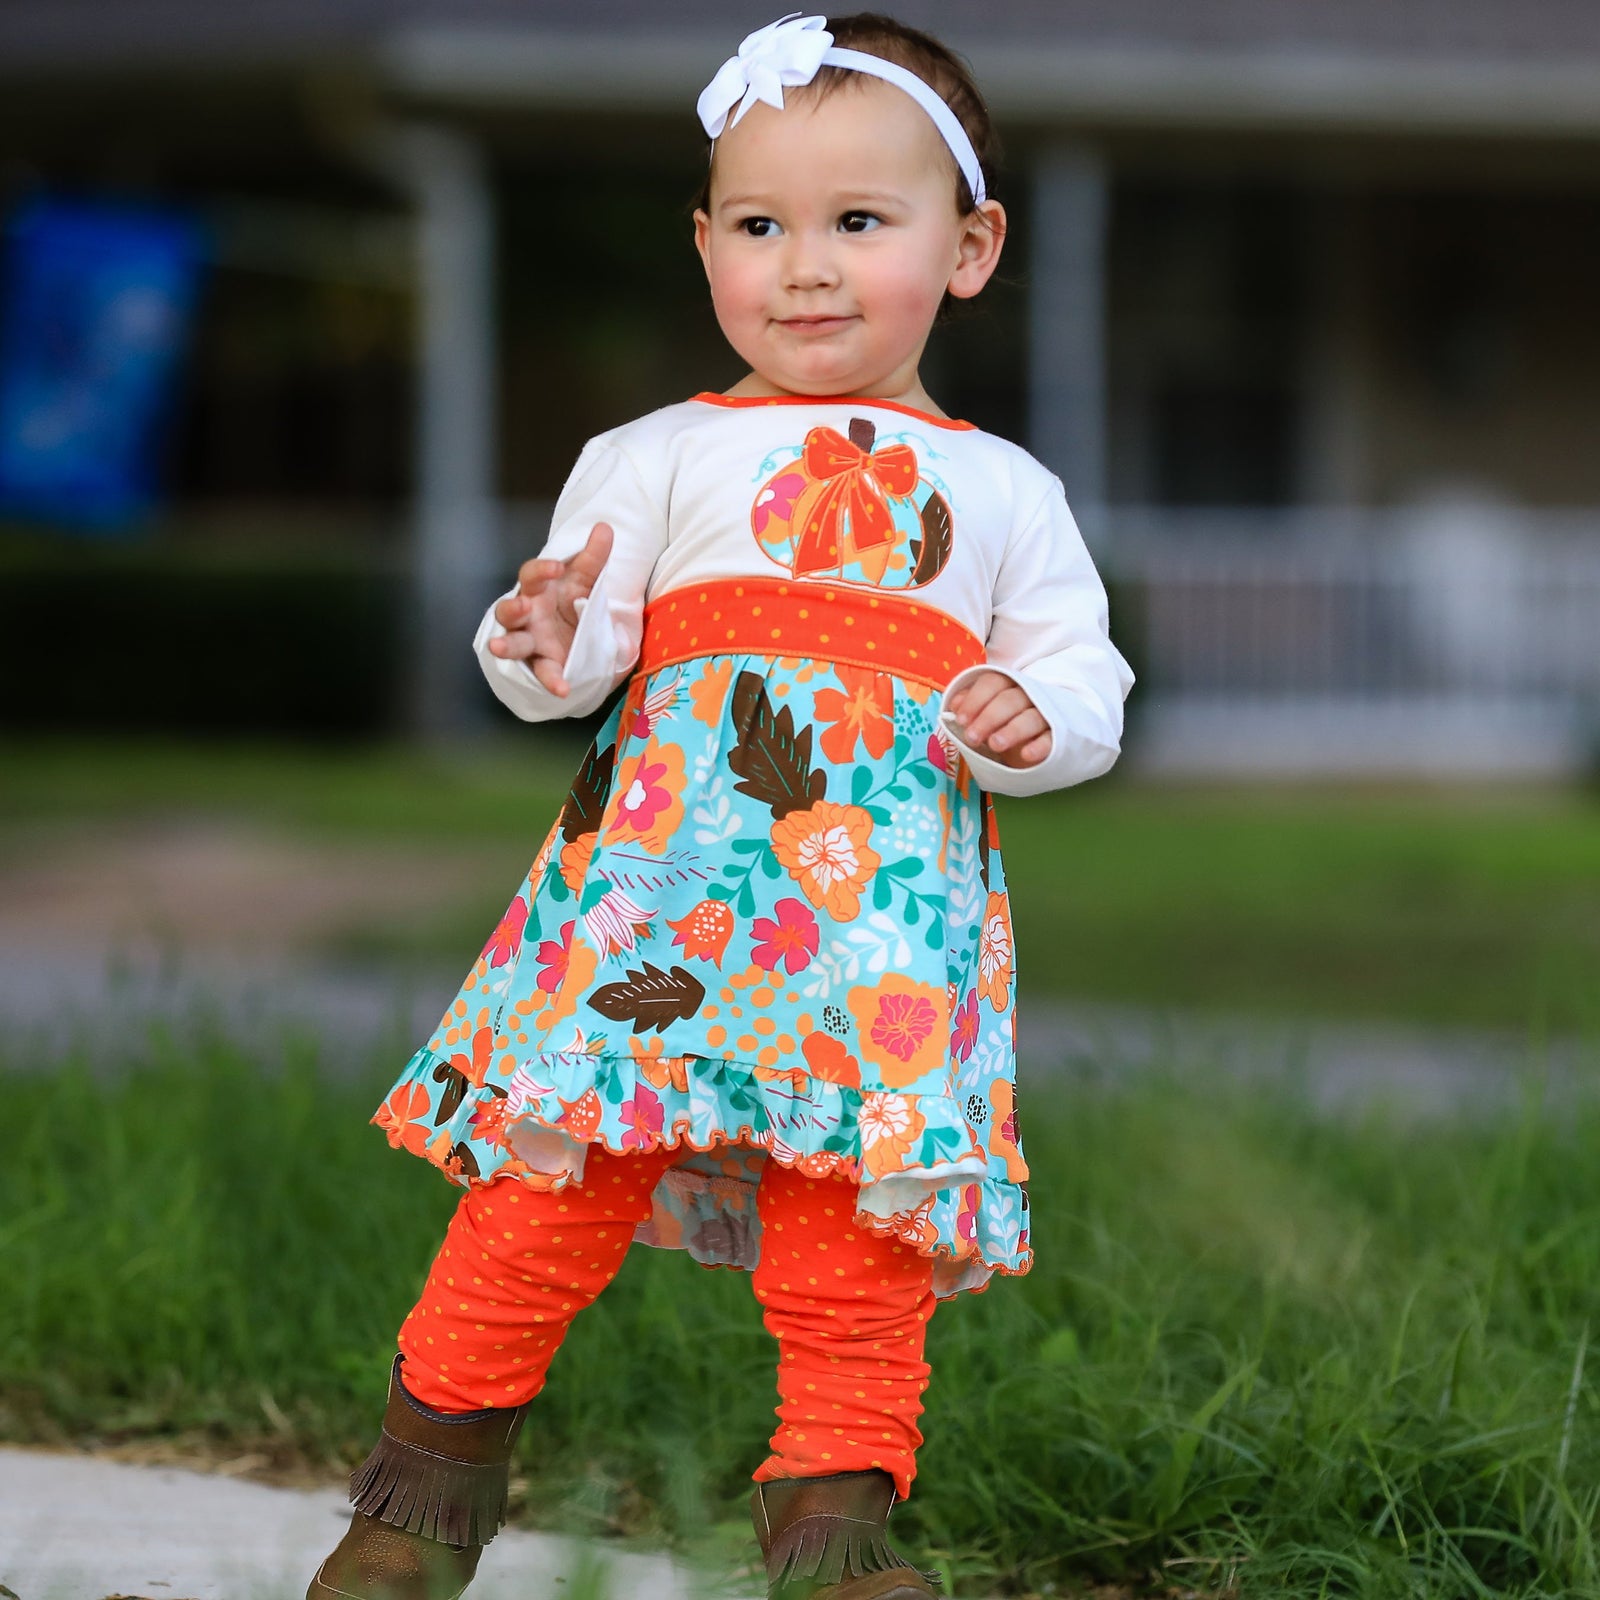 Vibrant Autumn Floral Pumpkin Thanksgiving Little and Big Girls Dress & Leggings by AnnLoren